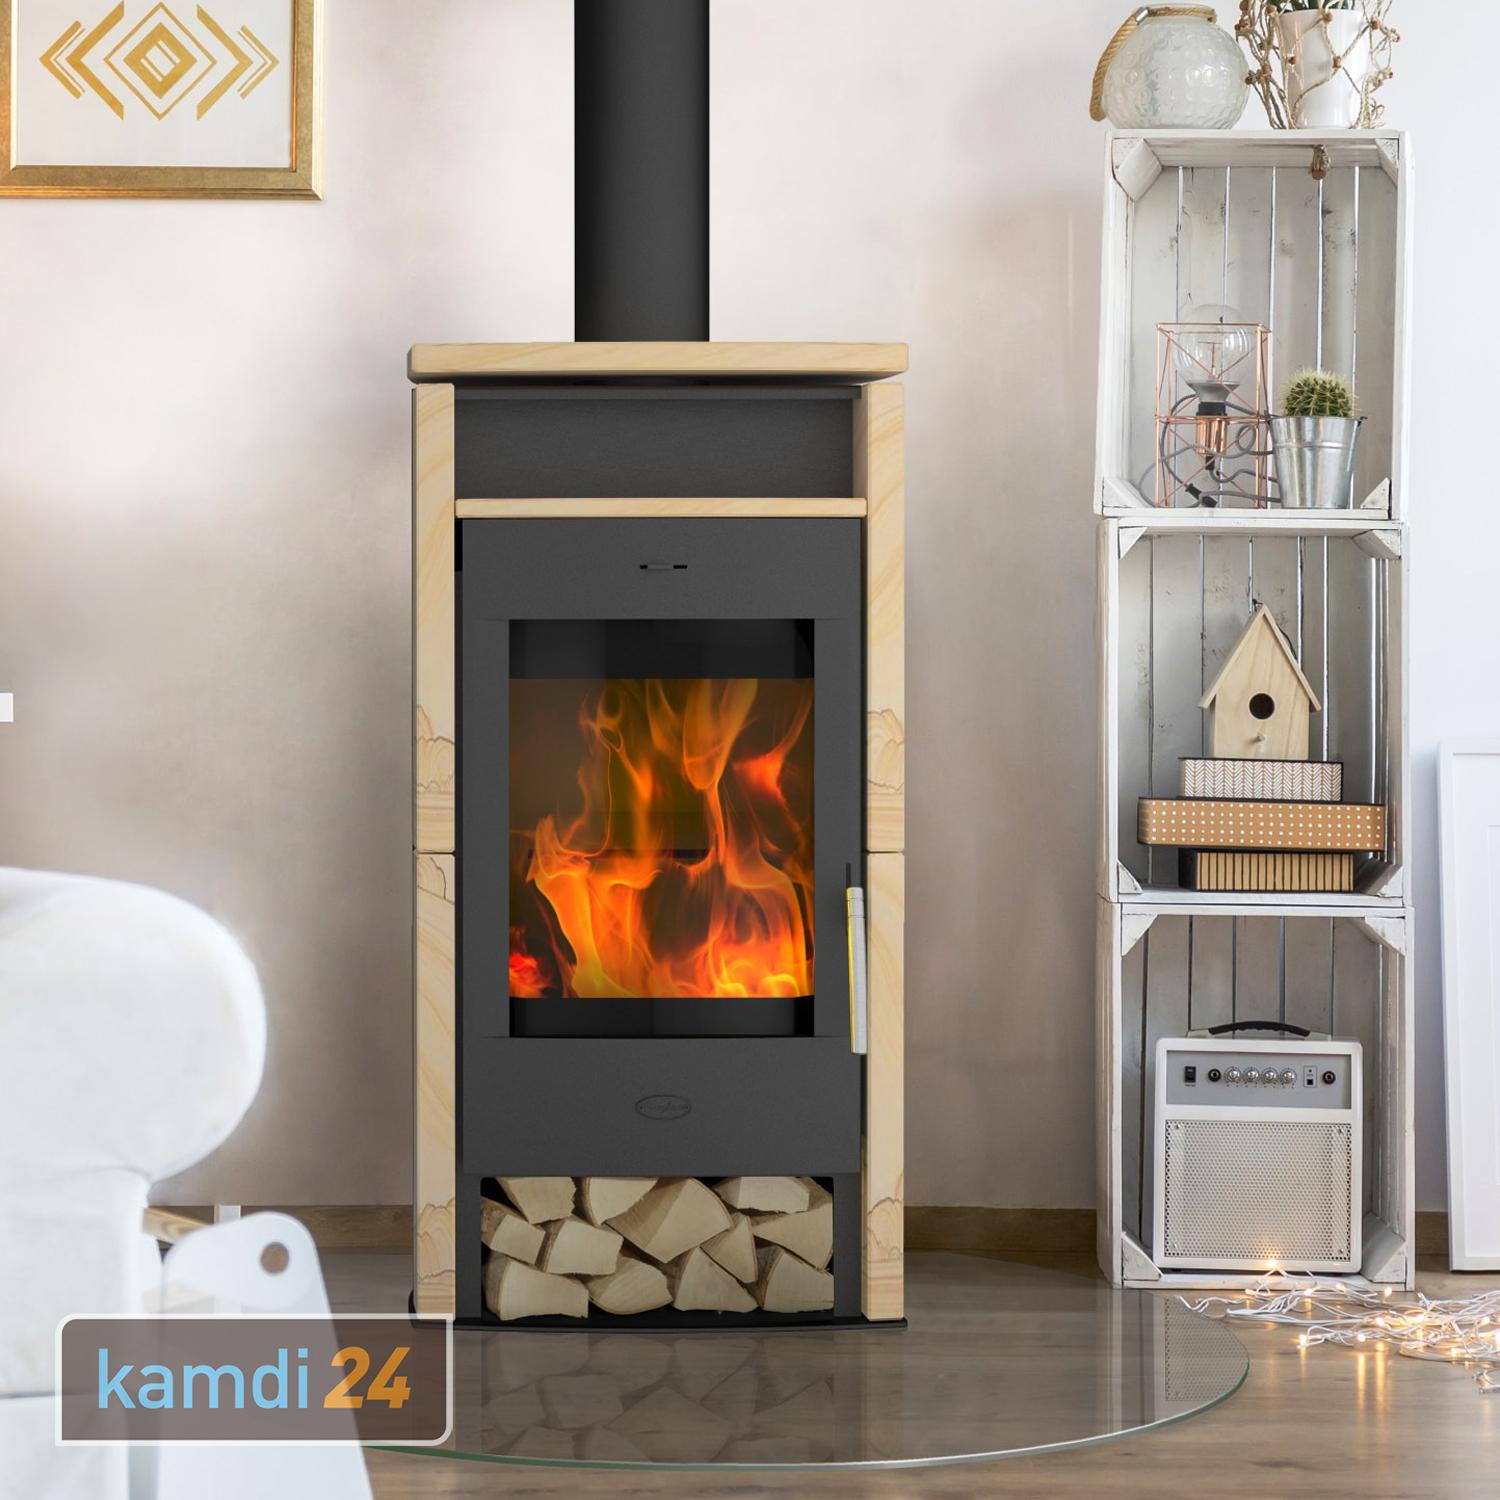 Fireplace Santiago Kaminofen Stahl Schwarz | Sandstein | im kamdi24-Shop  kaufen